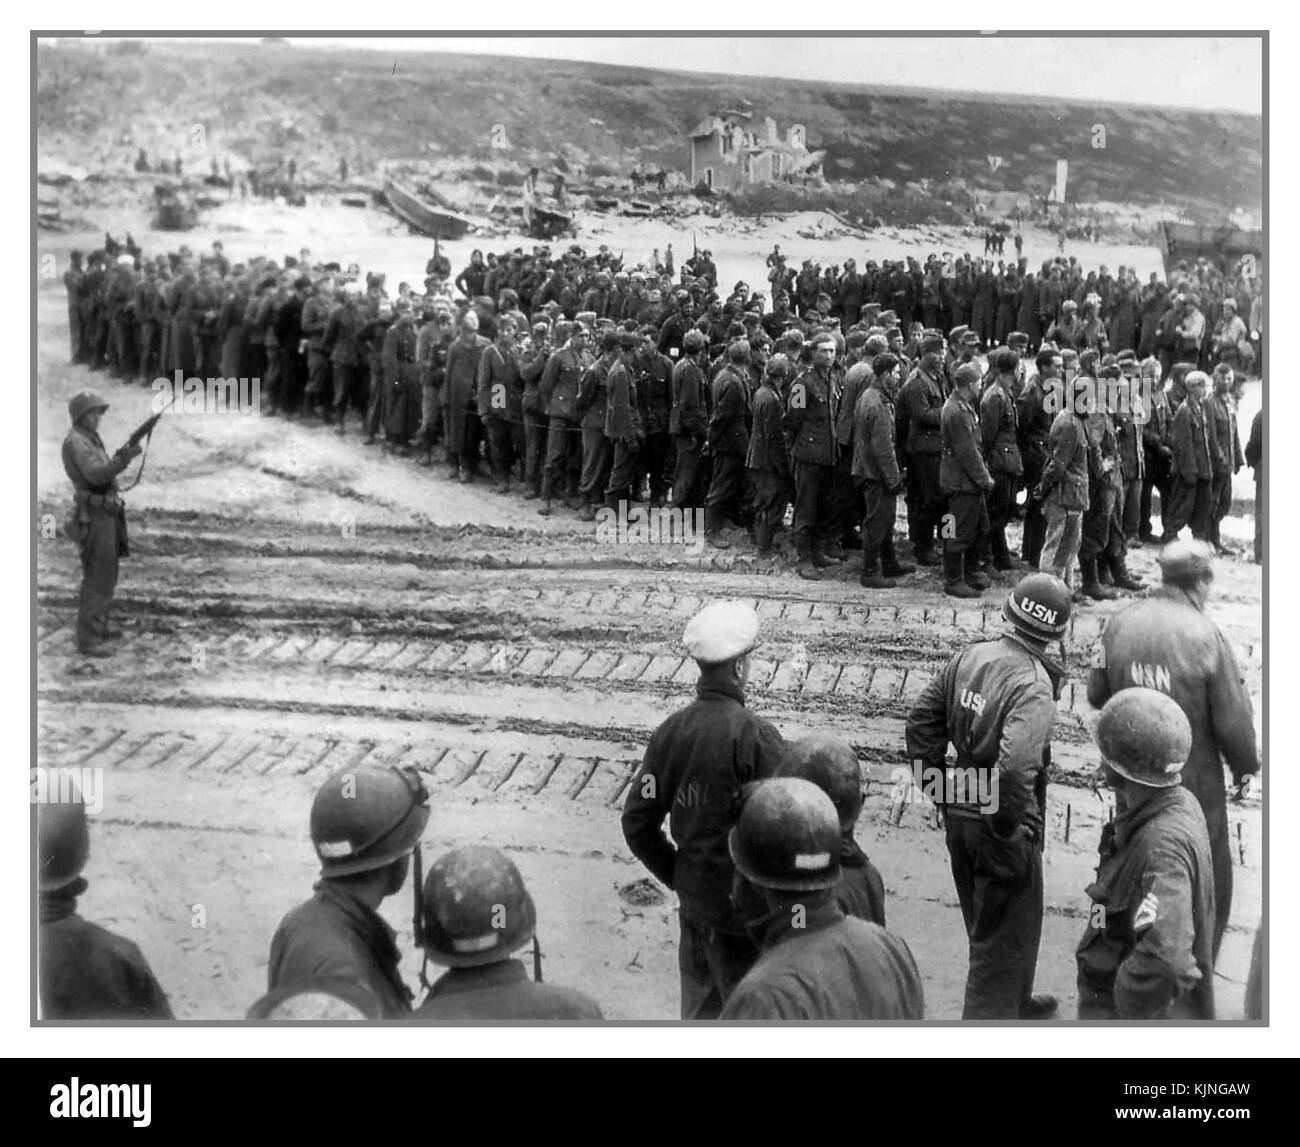 15 juin 1944 Omaha Beach Armée allemande les prisonniers militaires prisonniers de bateau attendent le passage vers le Royaume-Uni... L'Allemagne D-Day et la Wehrmacht Waffen SS prisonniers avec les troupes GI américain garde en premier plan Banque D'Images